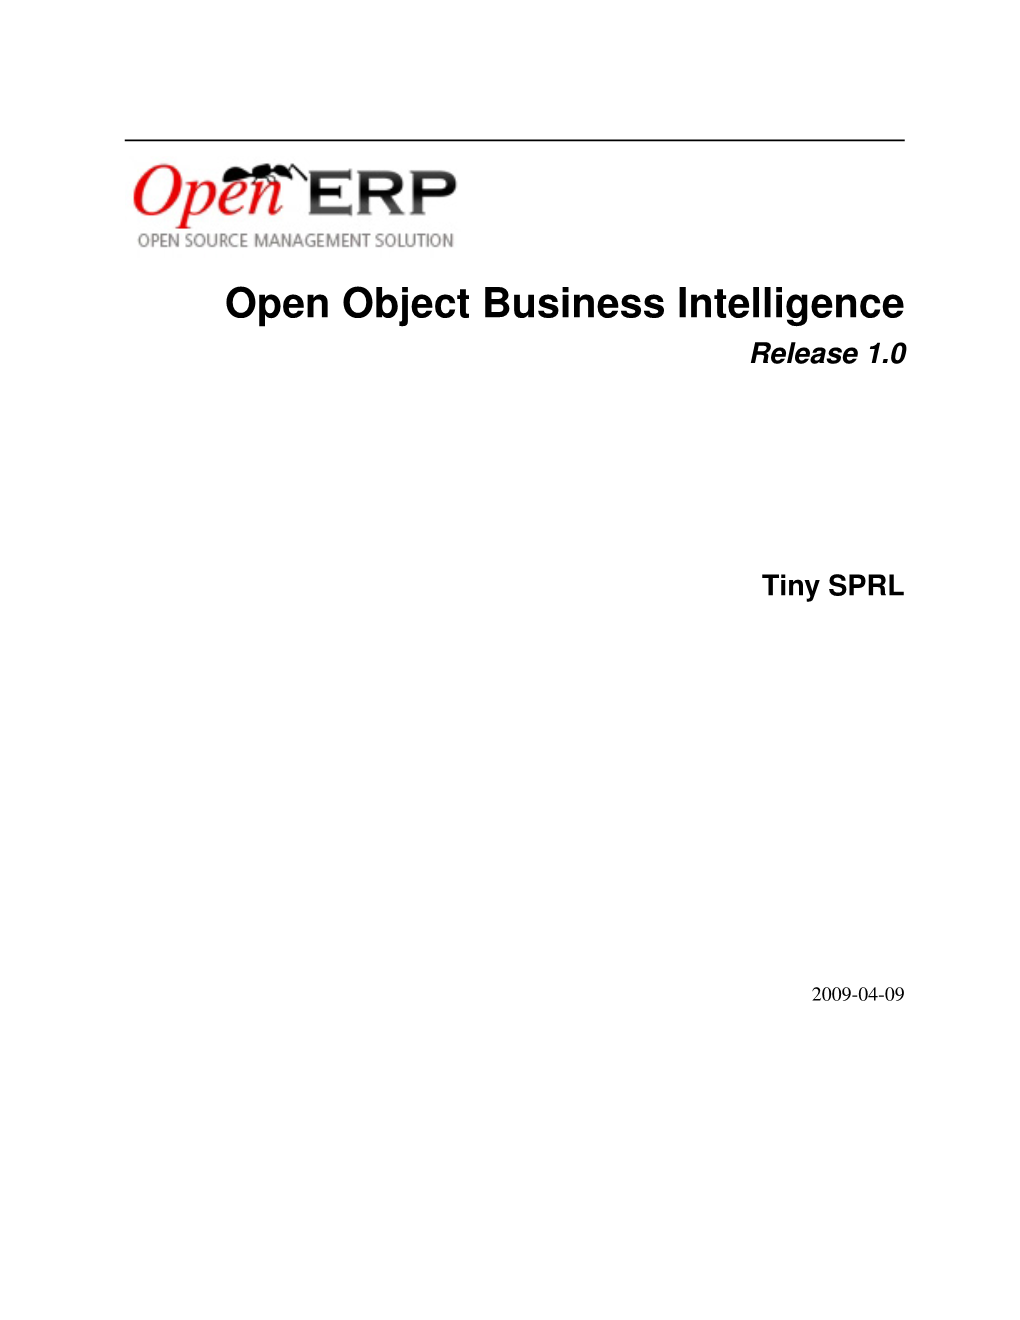 Open Object Business Intelligence Release 1.0